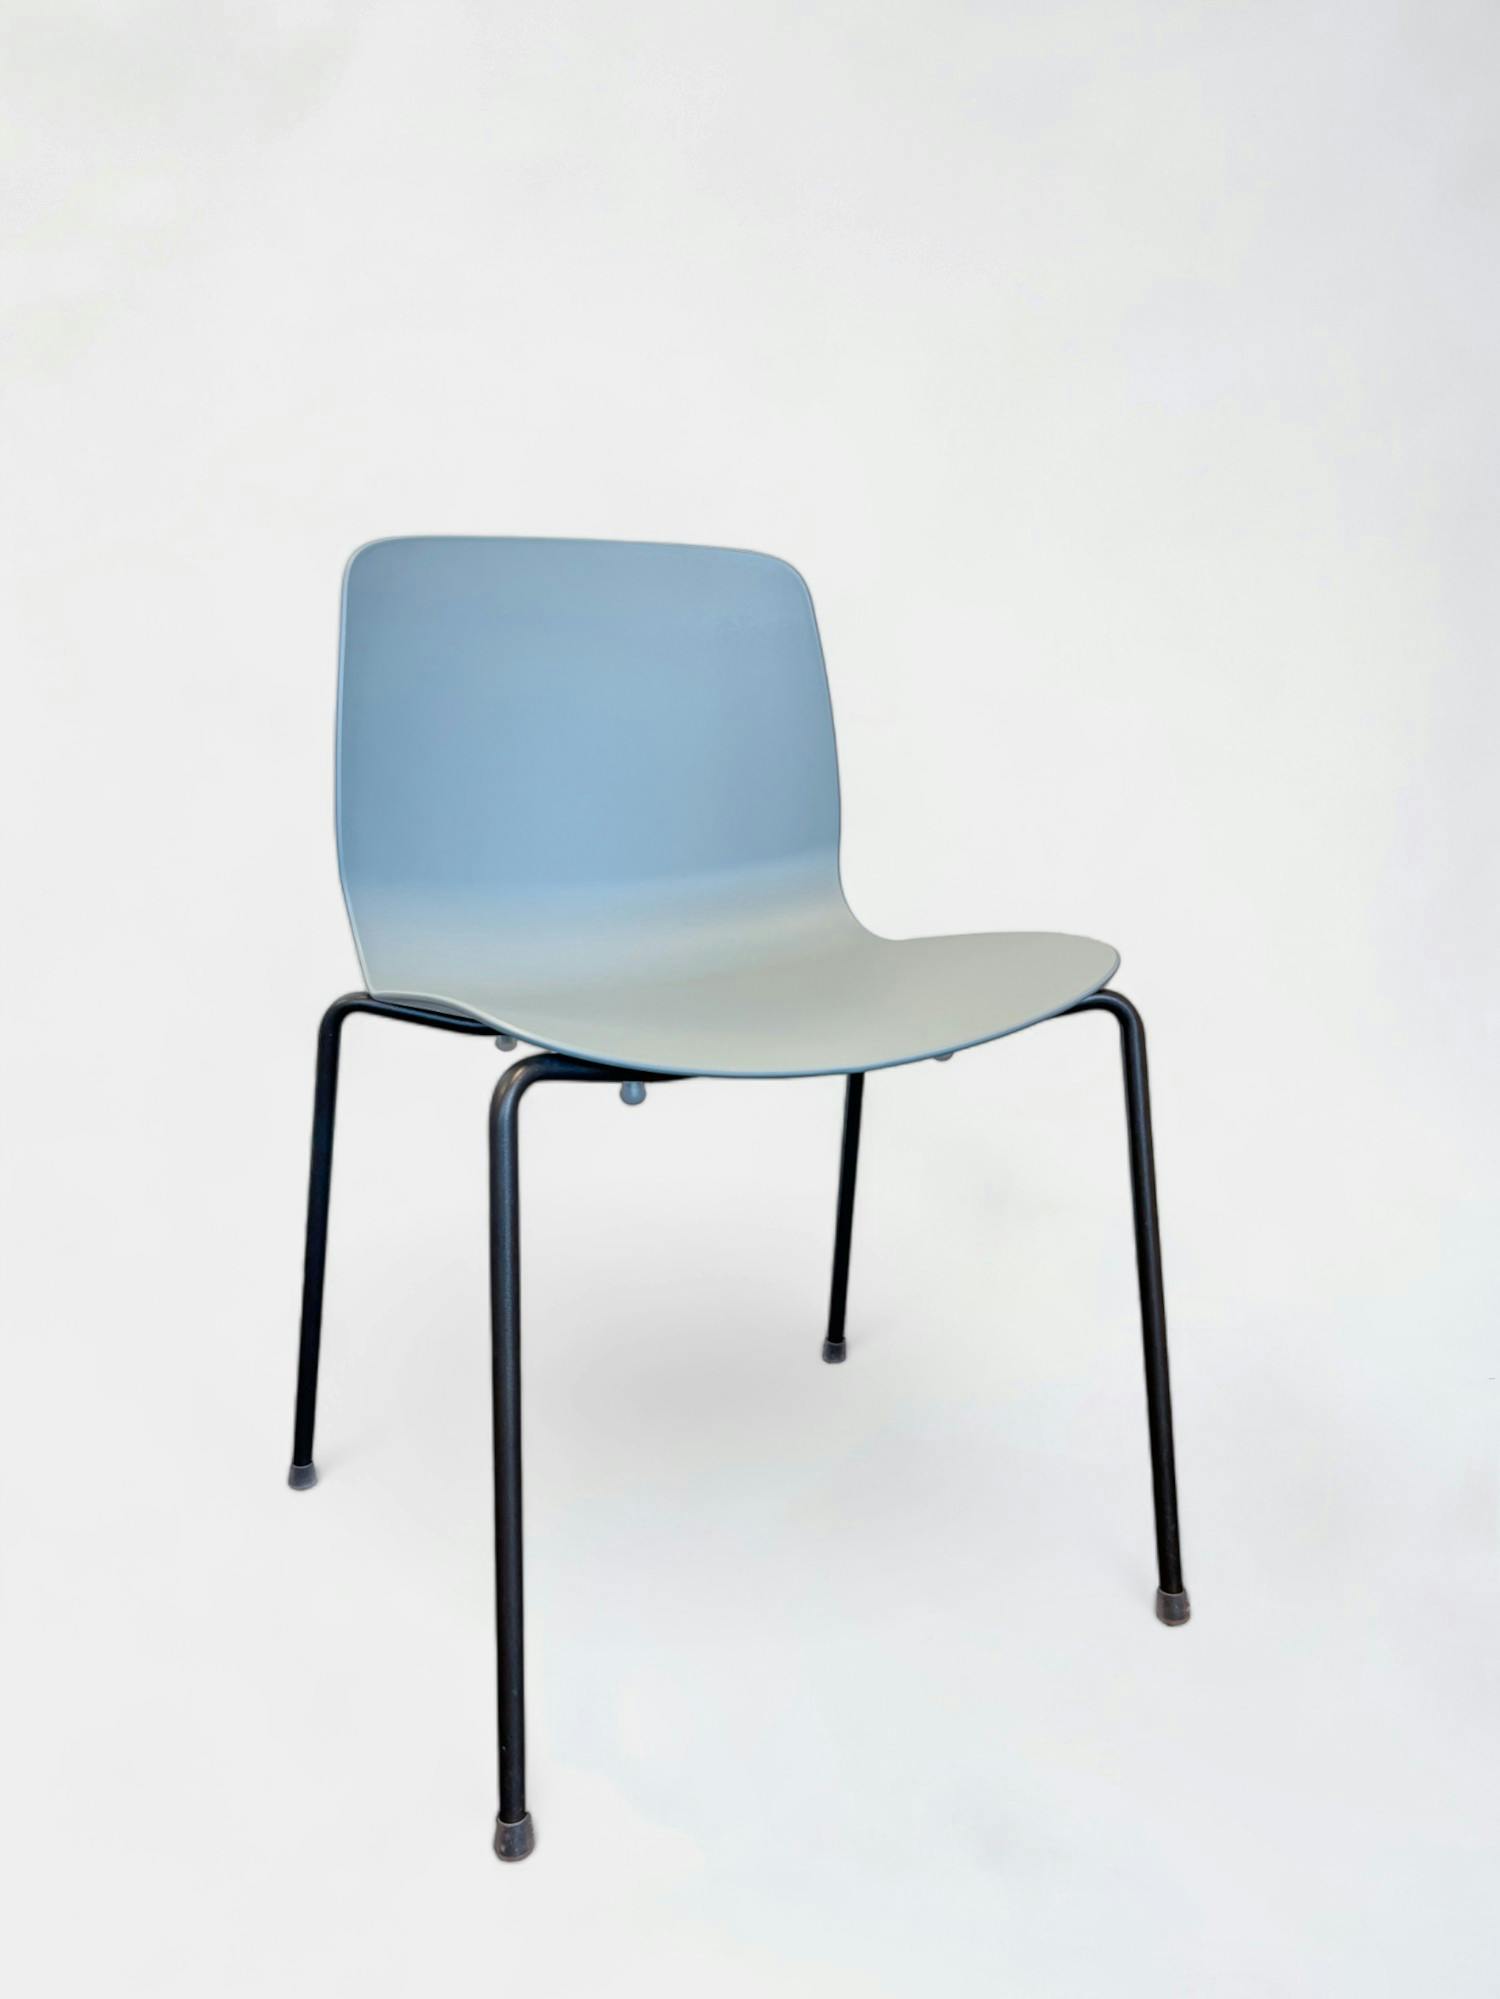 Chaise en plastique bleu clair avec pieds en acier chromé - Relieve Furniture